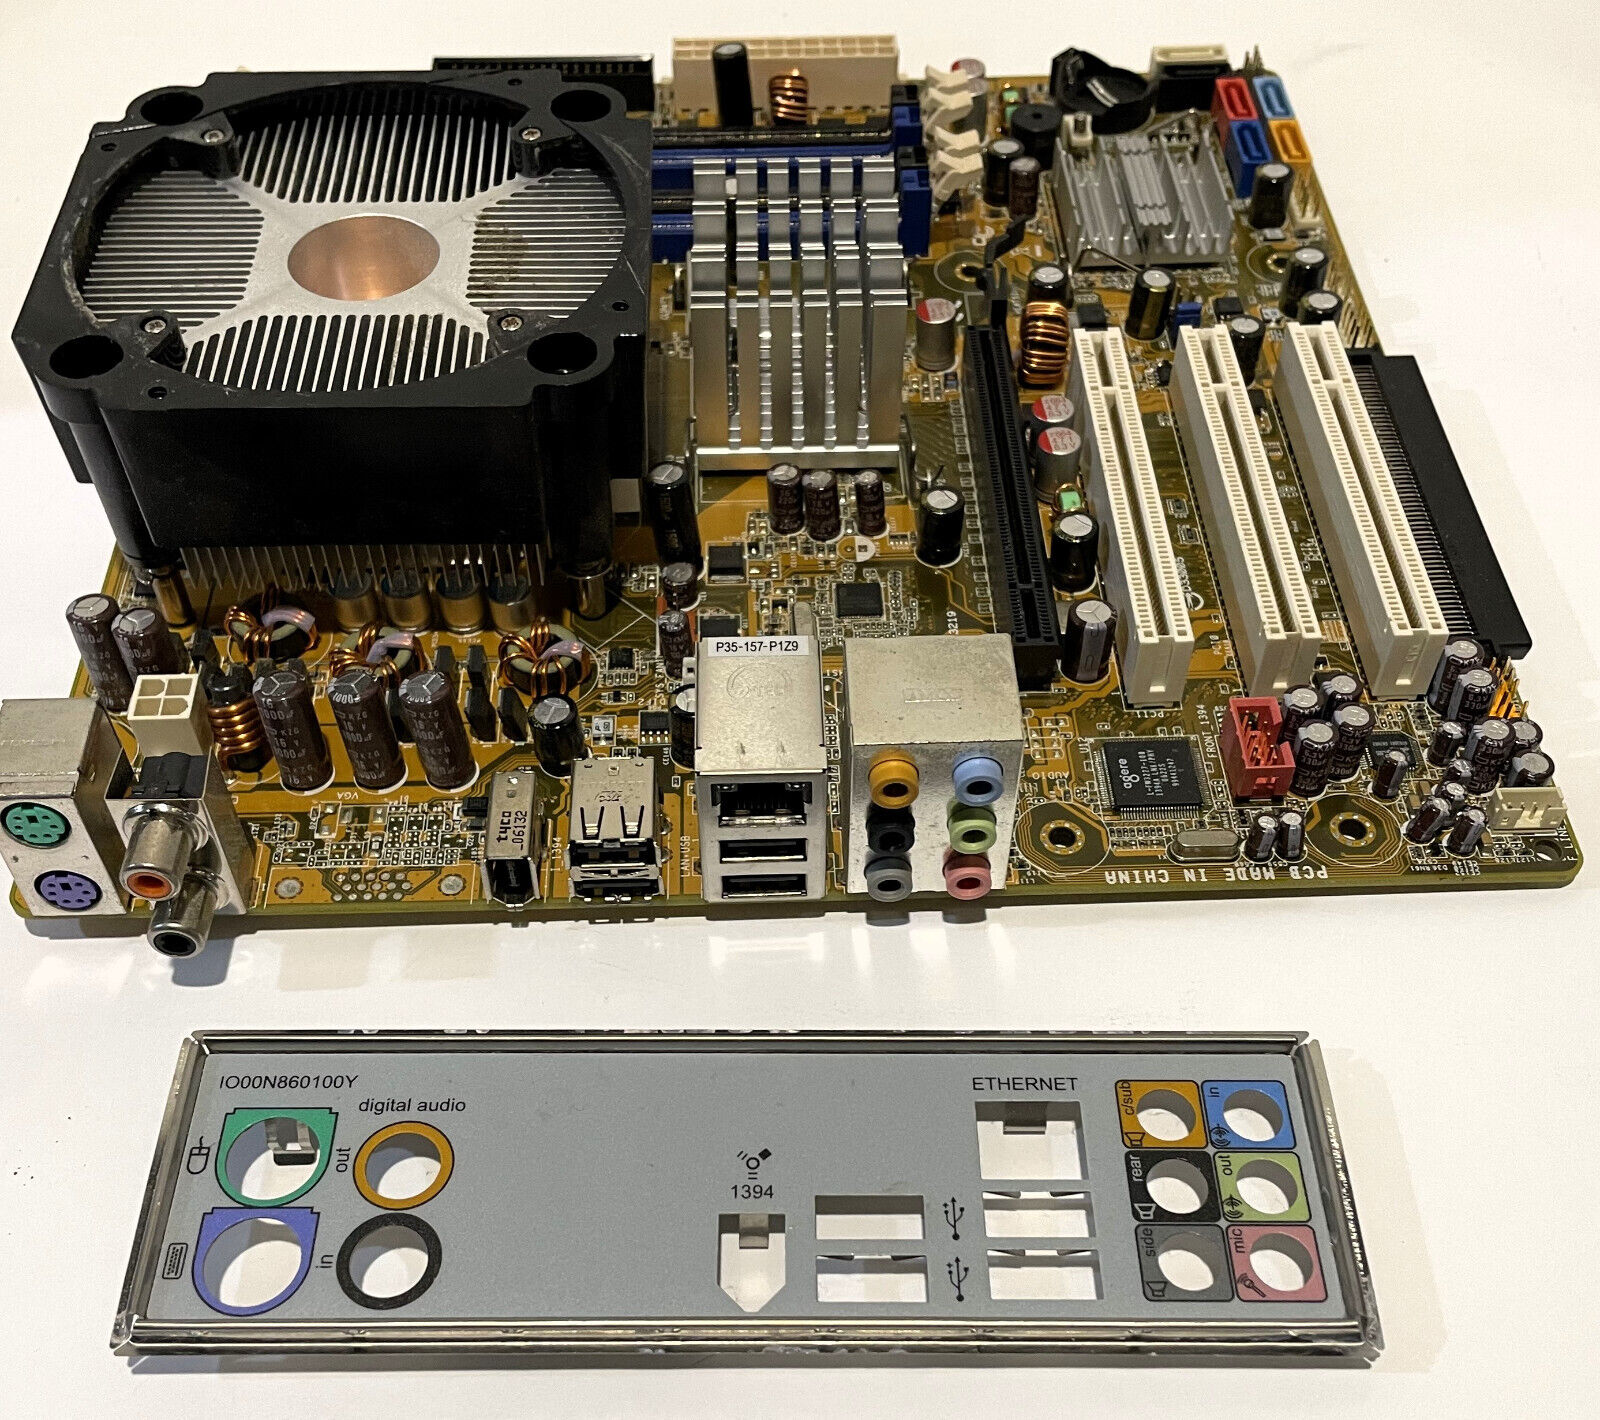 ASUS P5BW-LA Motherboard Intel P965 Socket LGA 775 DDR2 DIMM USB 2.0 ATX